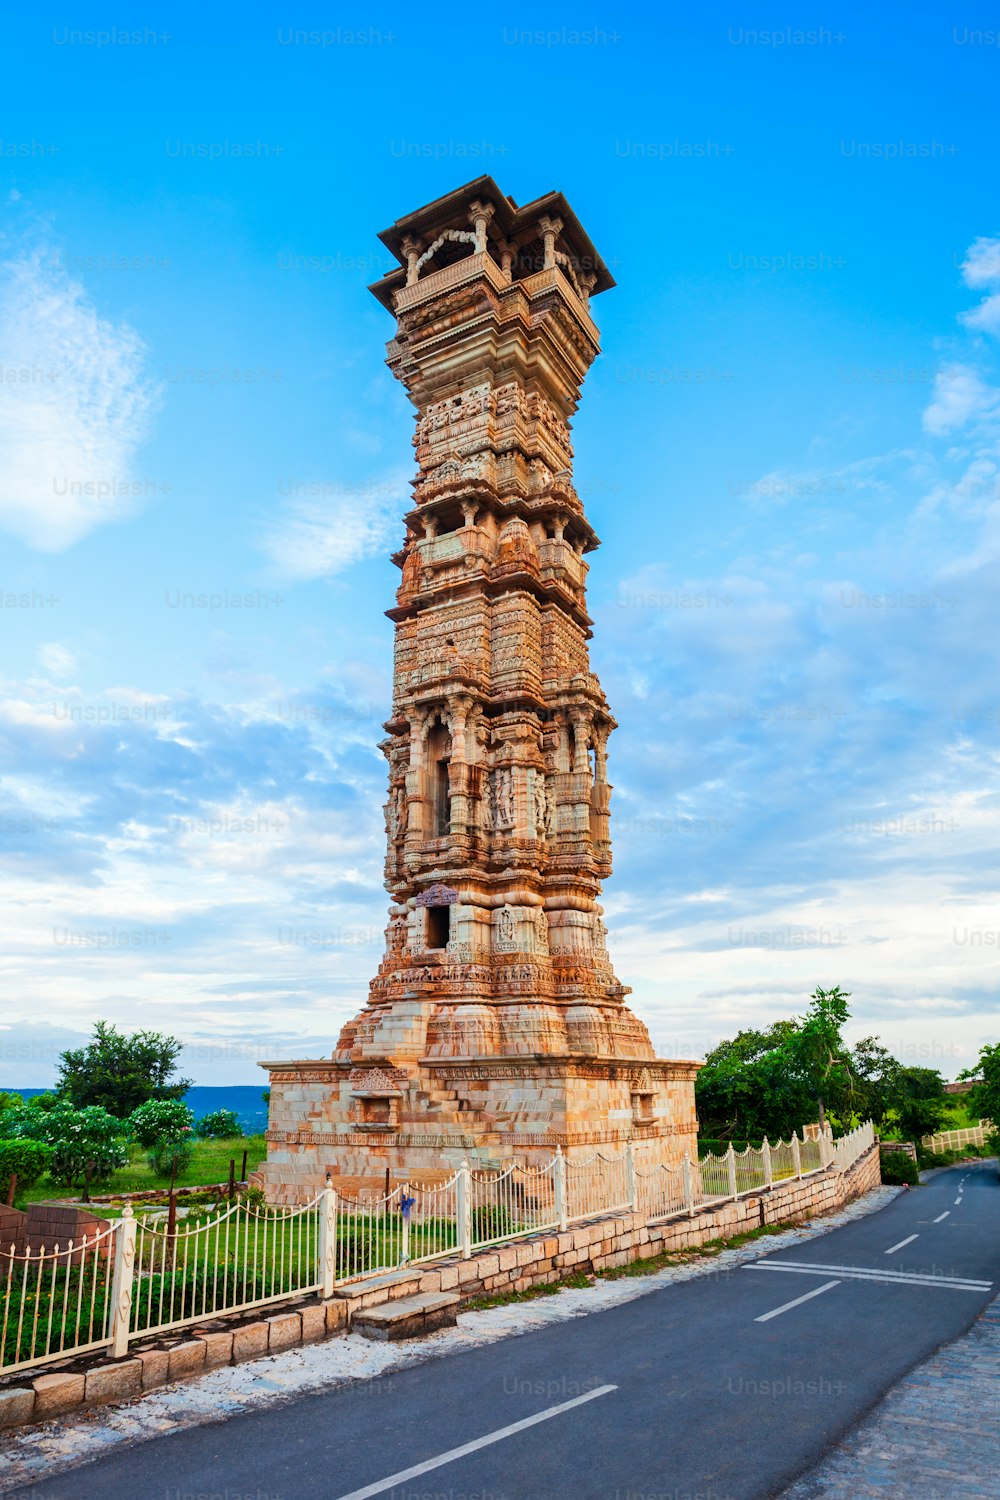 キルティスタンブは、インドのラジャスタン州チットールガル市のチットール砦にある記念碑であるタワーオブフェイムを意味します